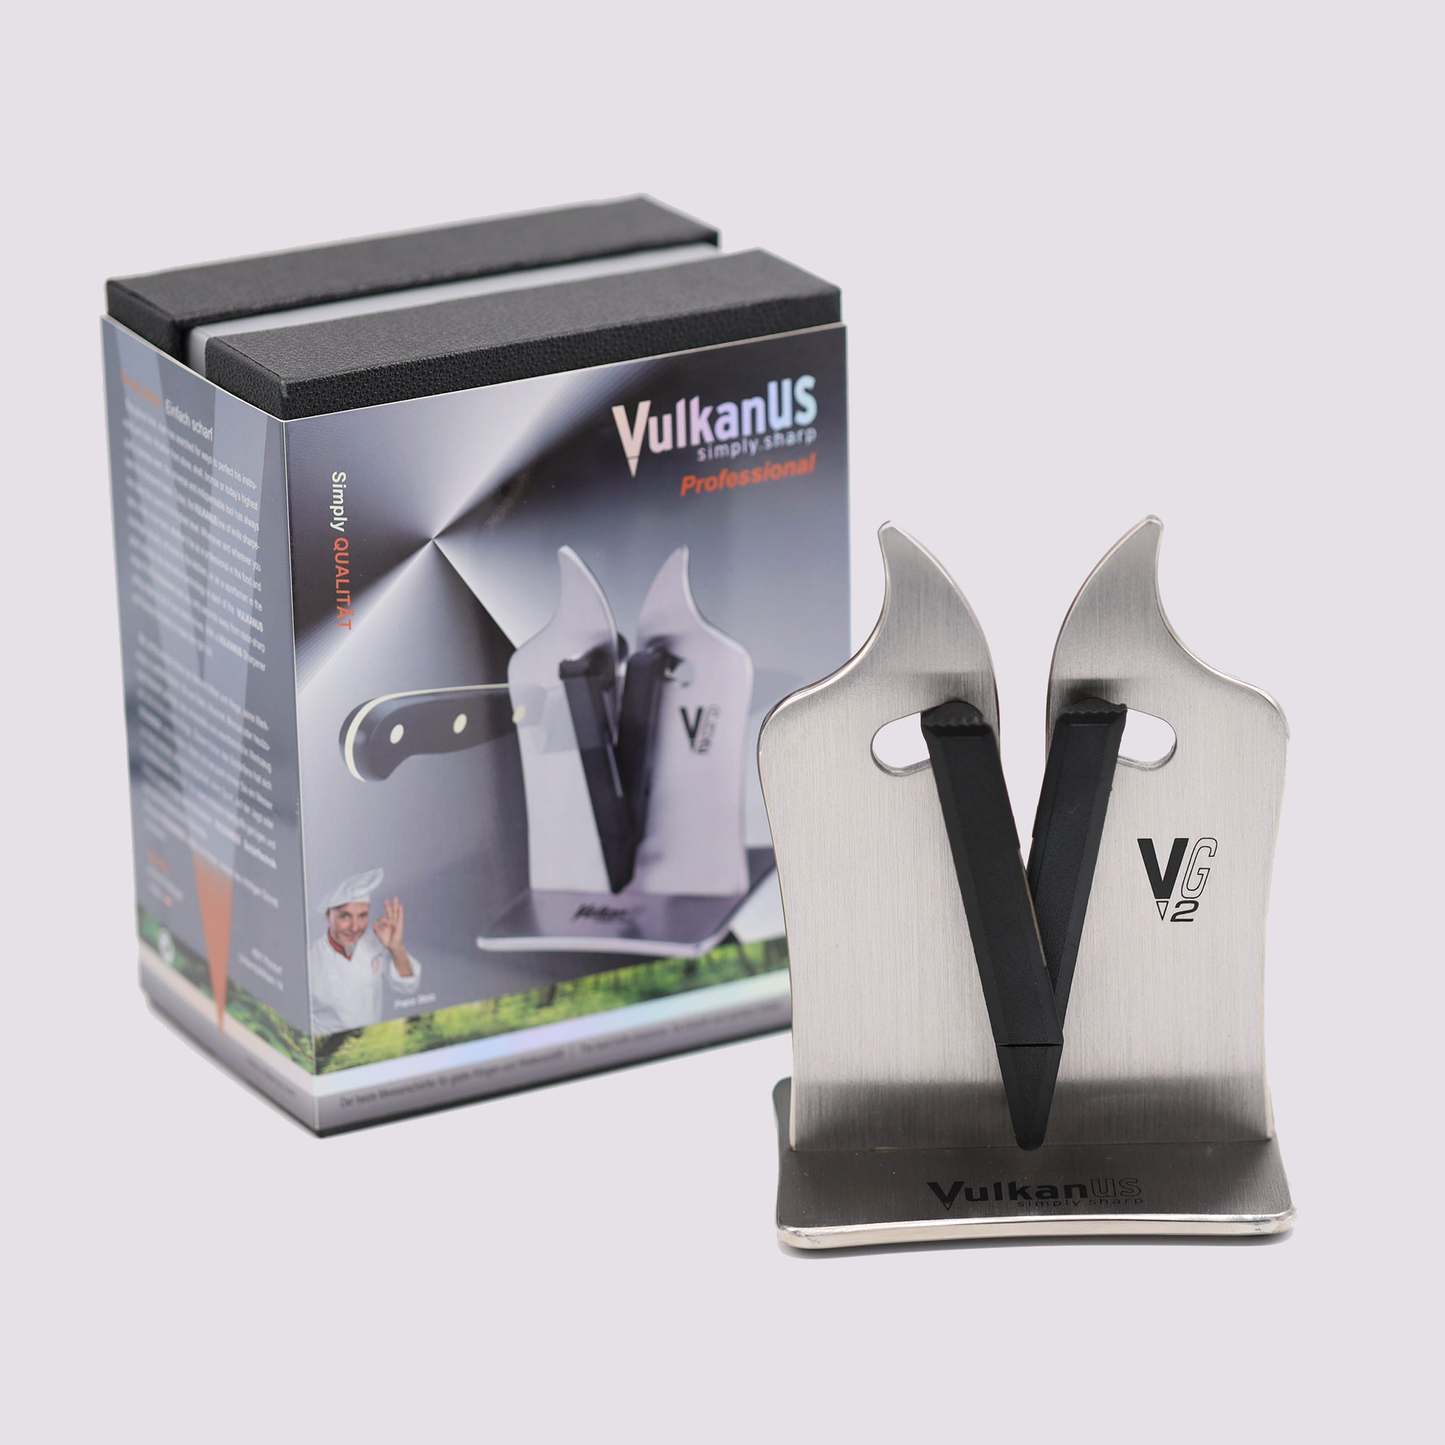 VulkanUS VG2 Professional